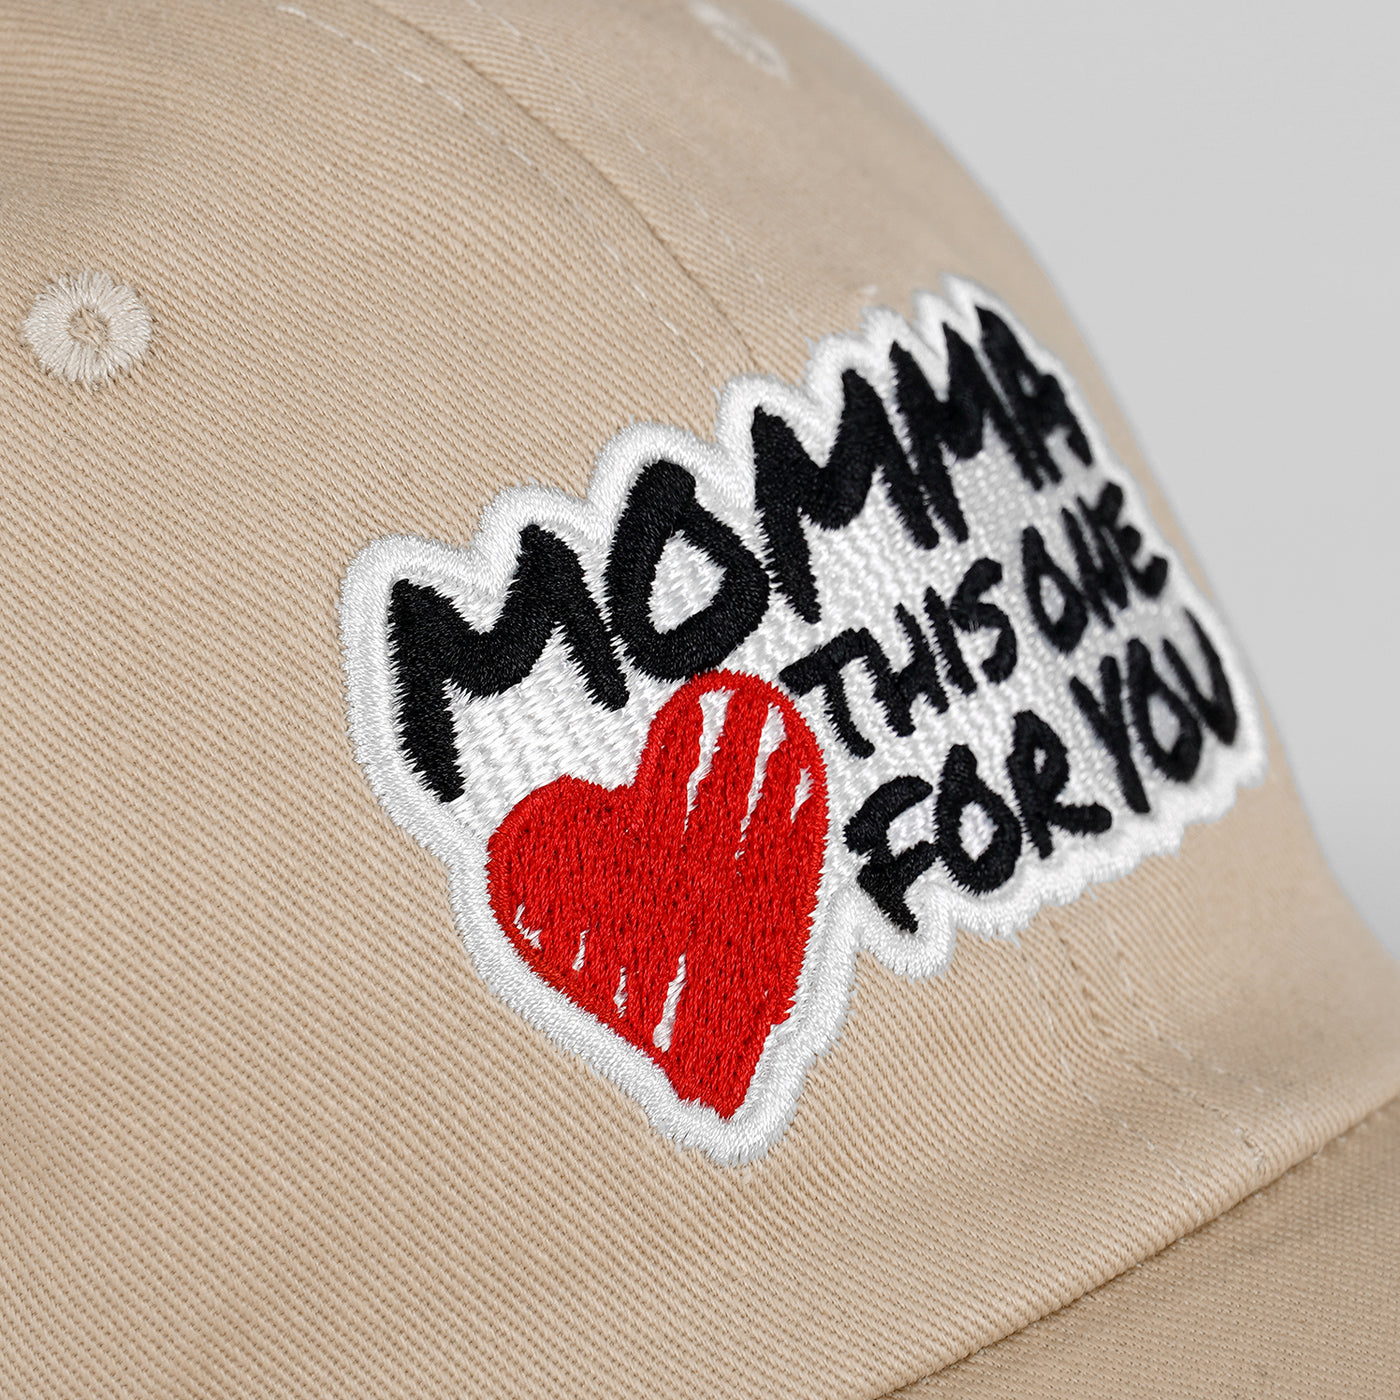 Momma Cream Dad Hat